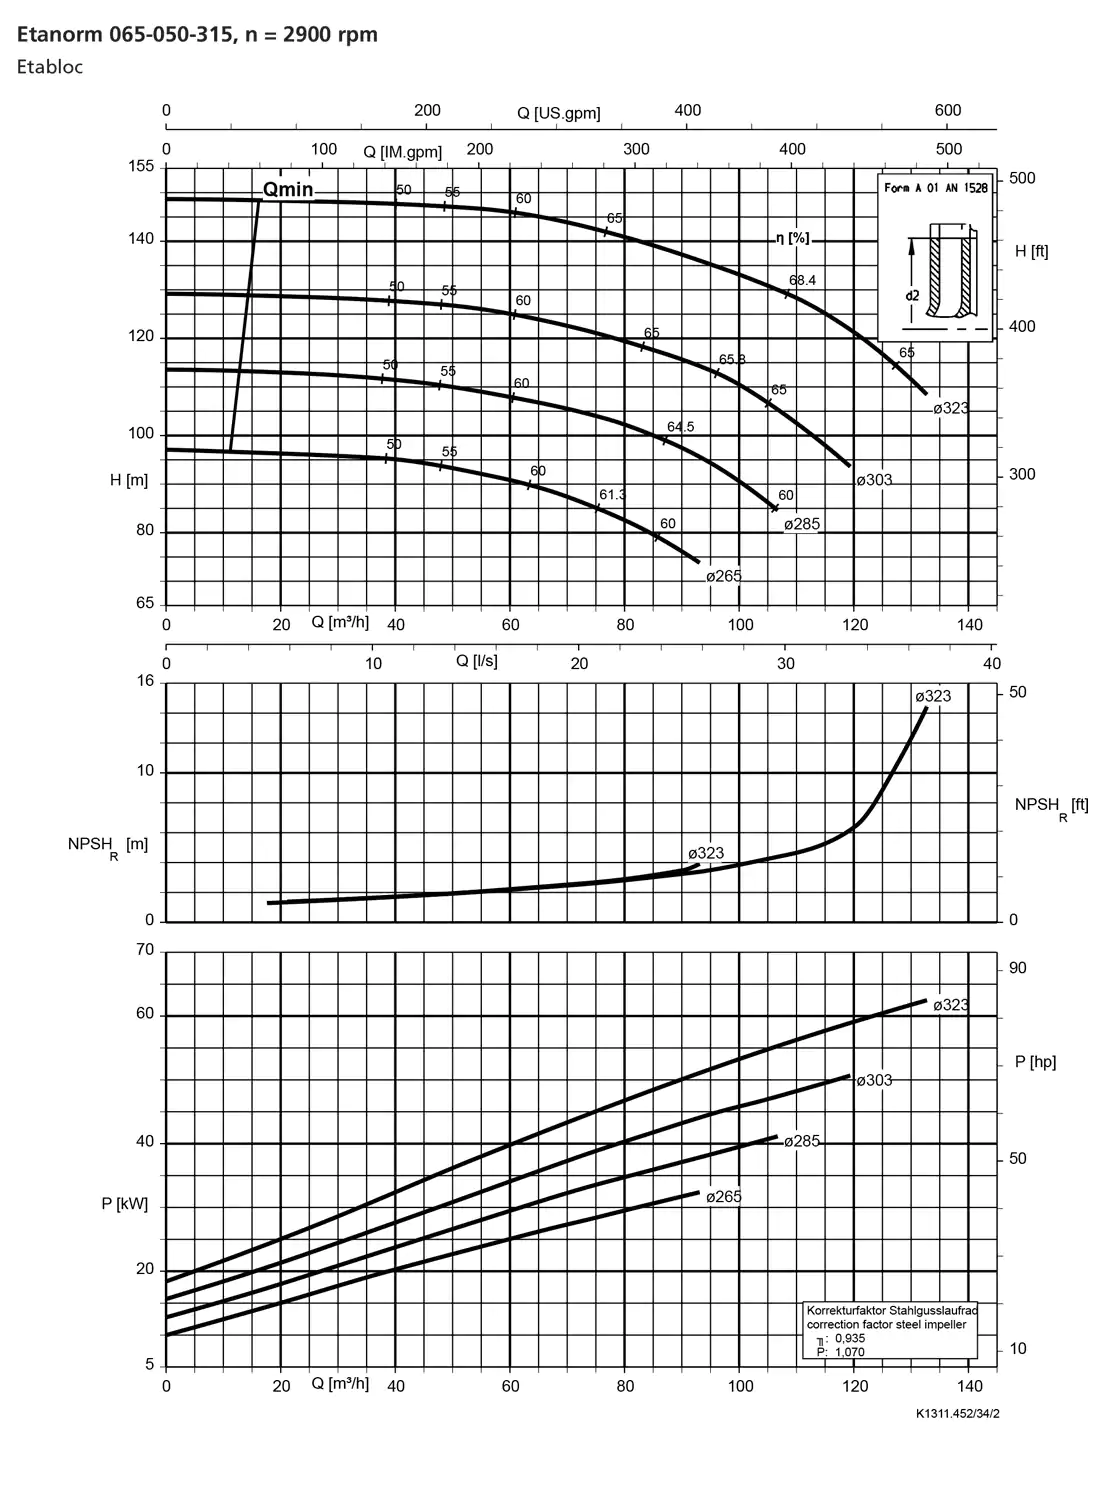 نمودار-کارکرد-پمپ-etanorm-65-050-315-2900